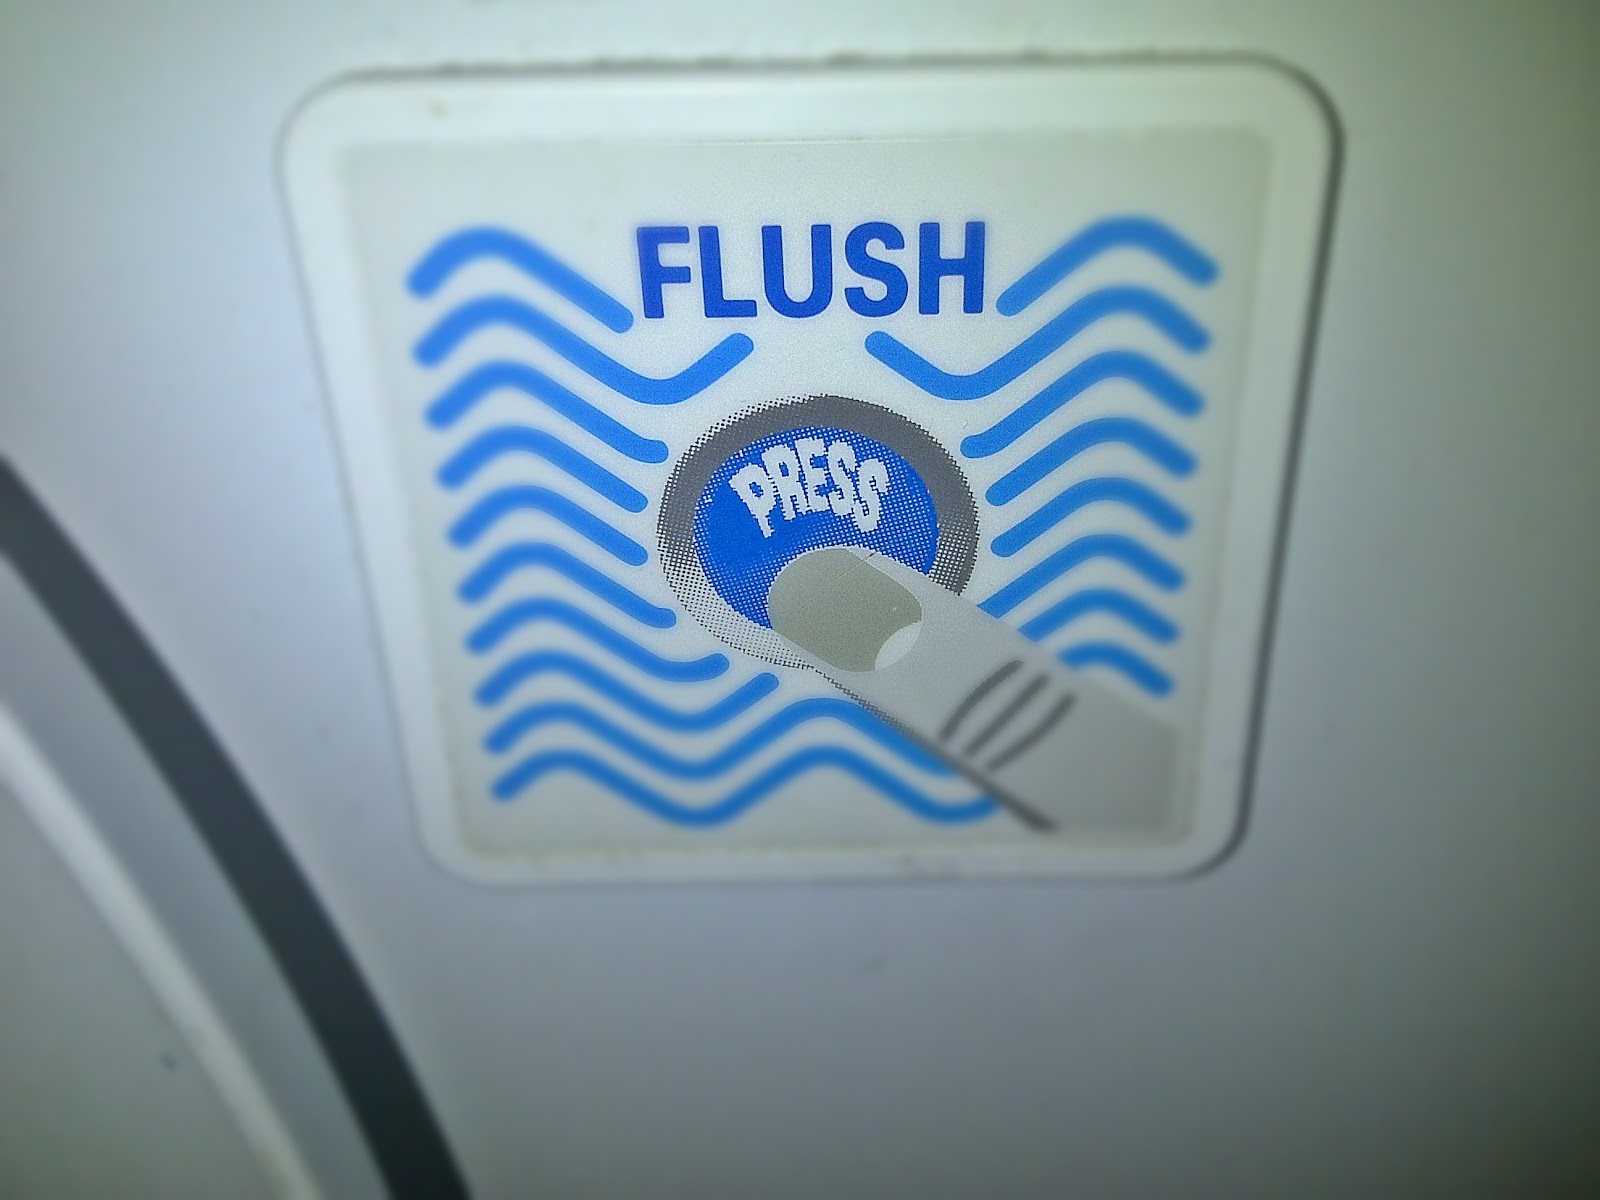 Flykarlyfly PLEASE Flush The Toilet.